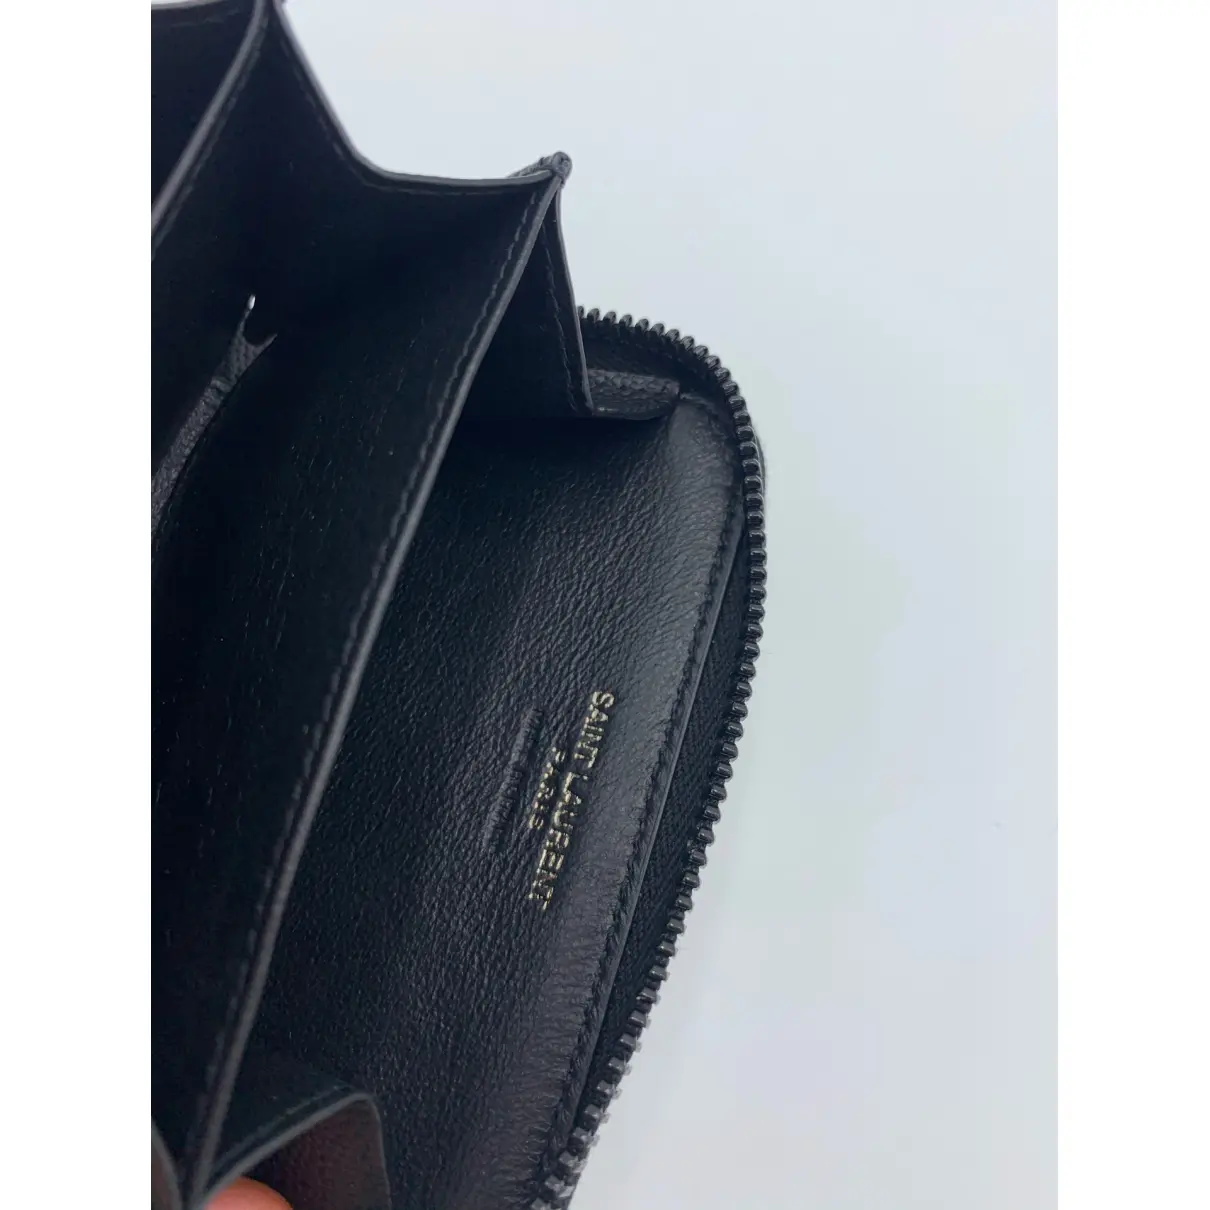 Monogramme leather wallet Saint Laurent